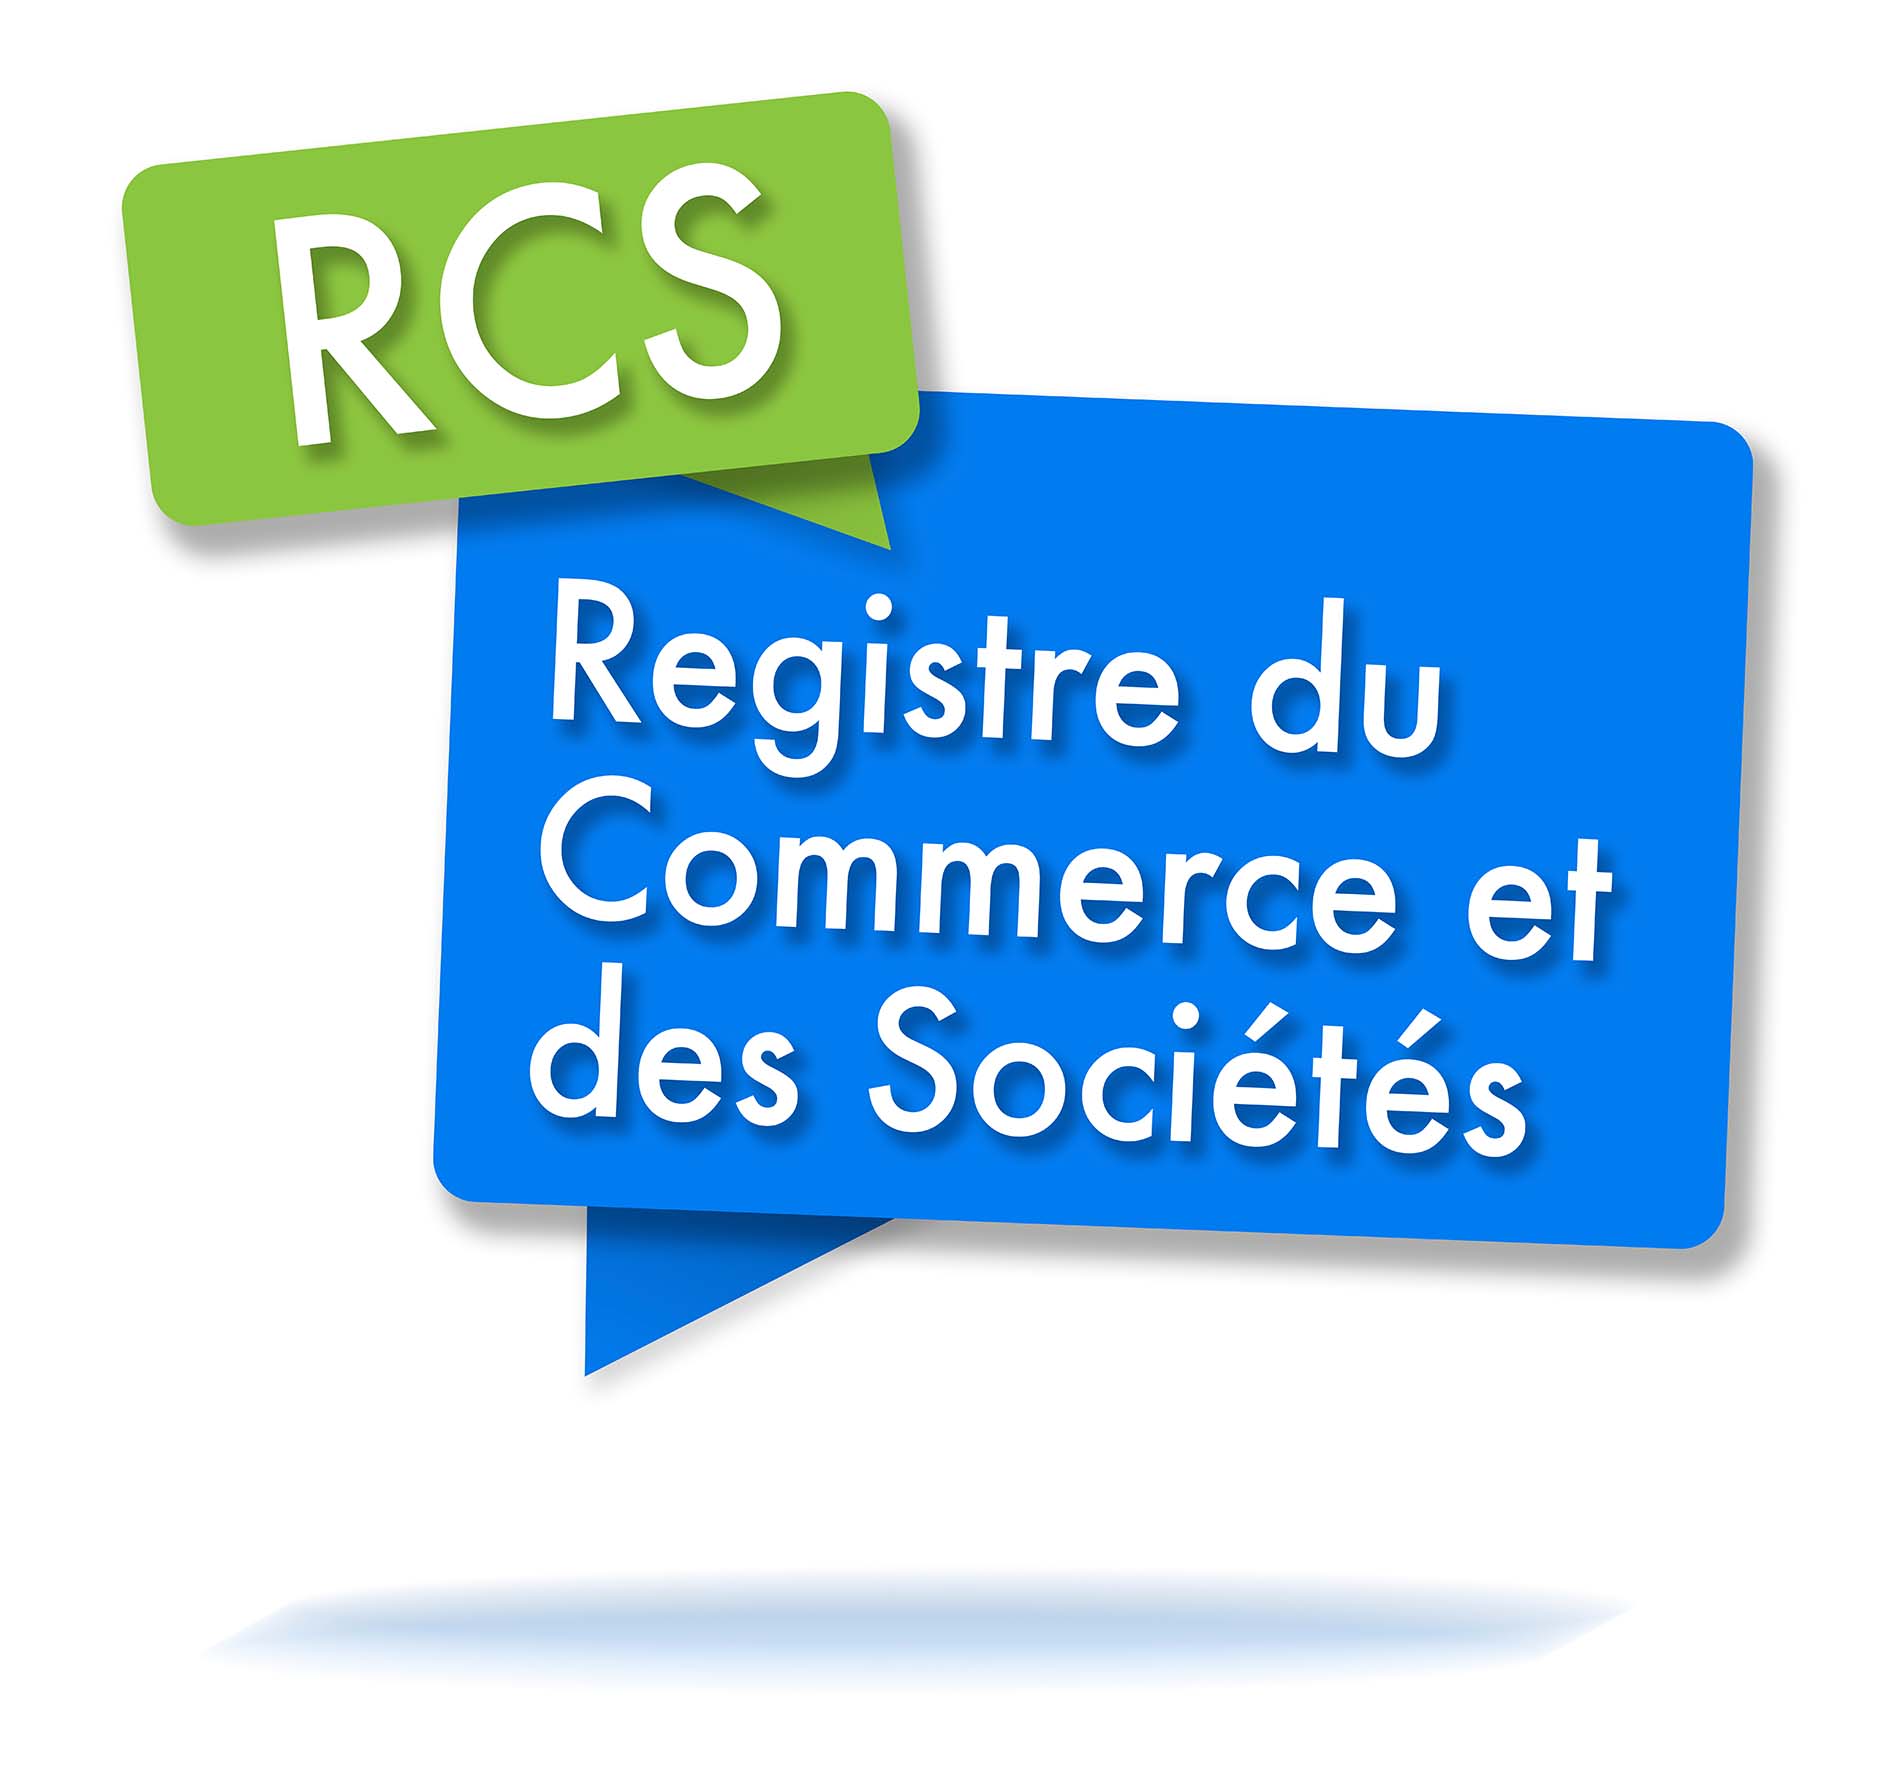 Définition du RCS - Registre du commerce et des sociétés